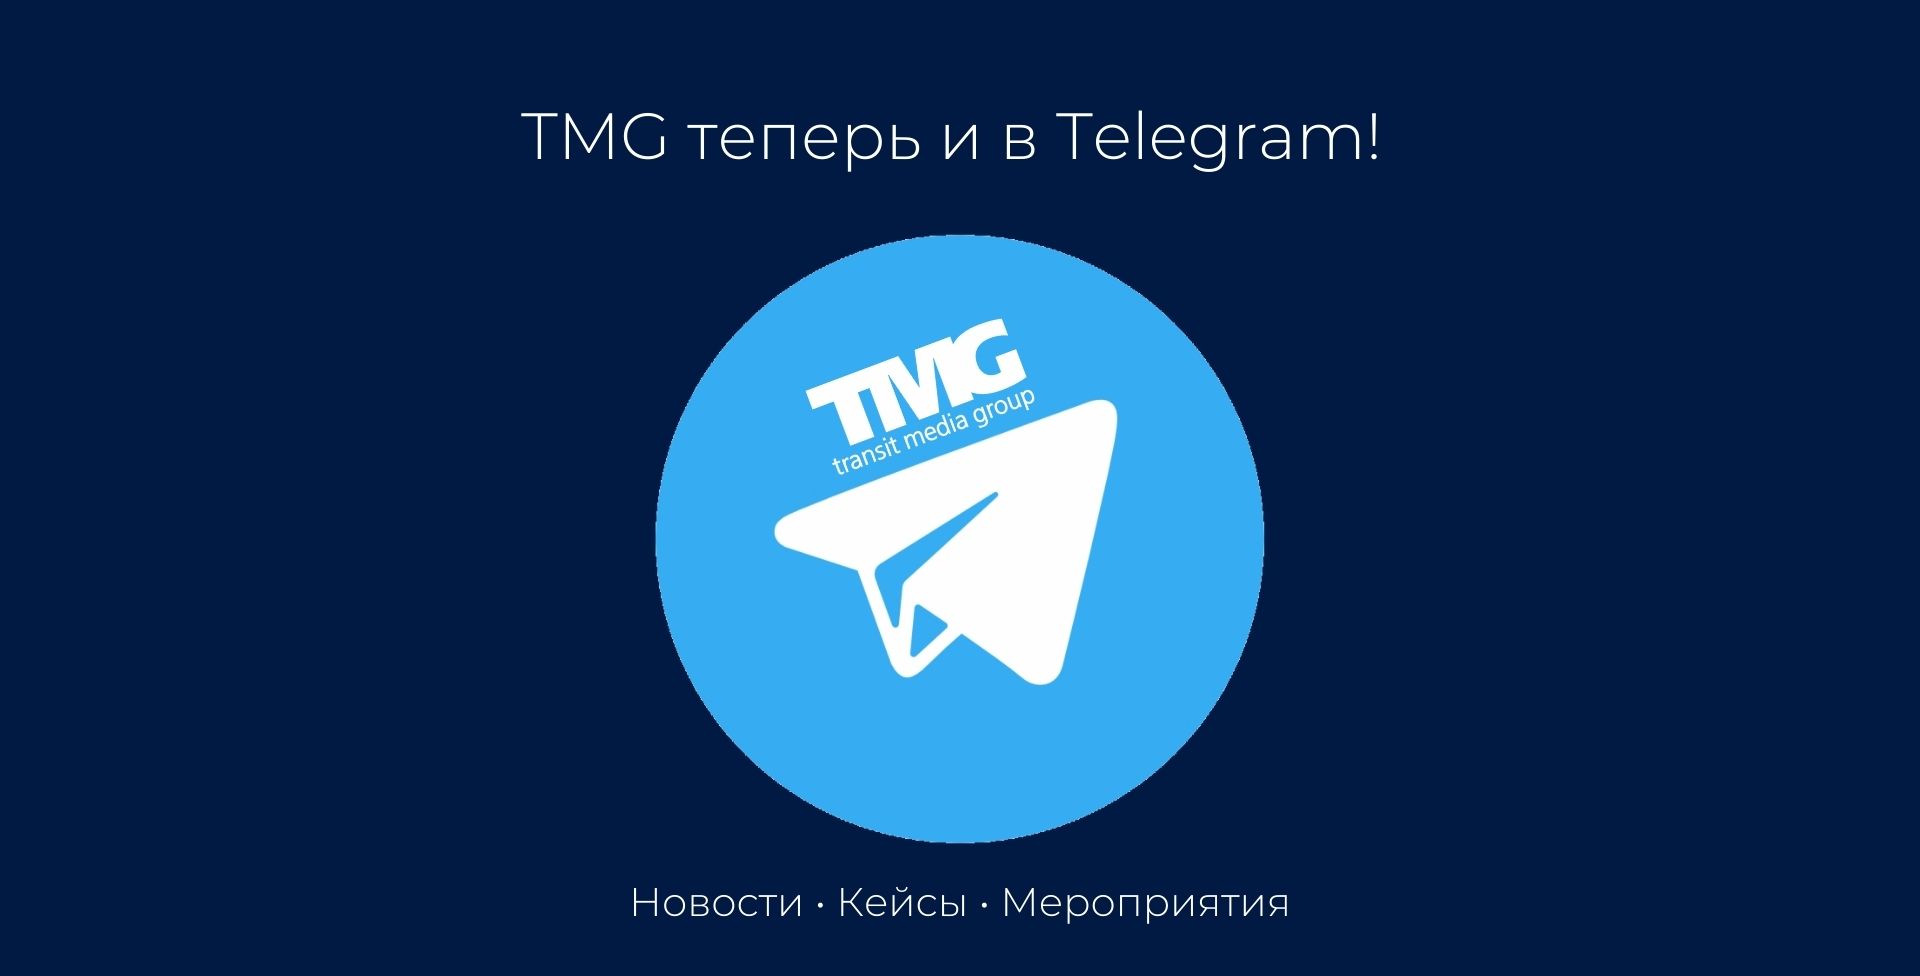 Спешите заказать выгодно рекламу по специальным предложениям от TMG! Подробности у менеджера!